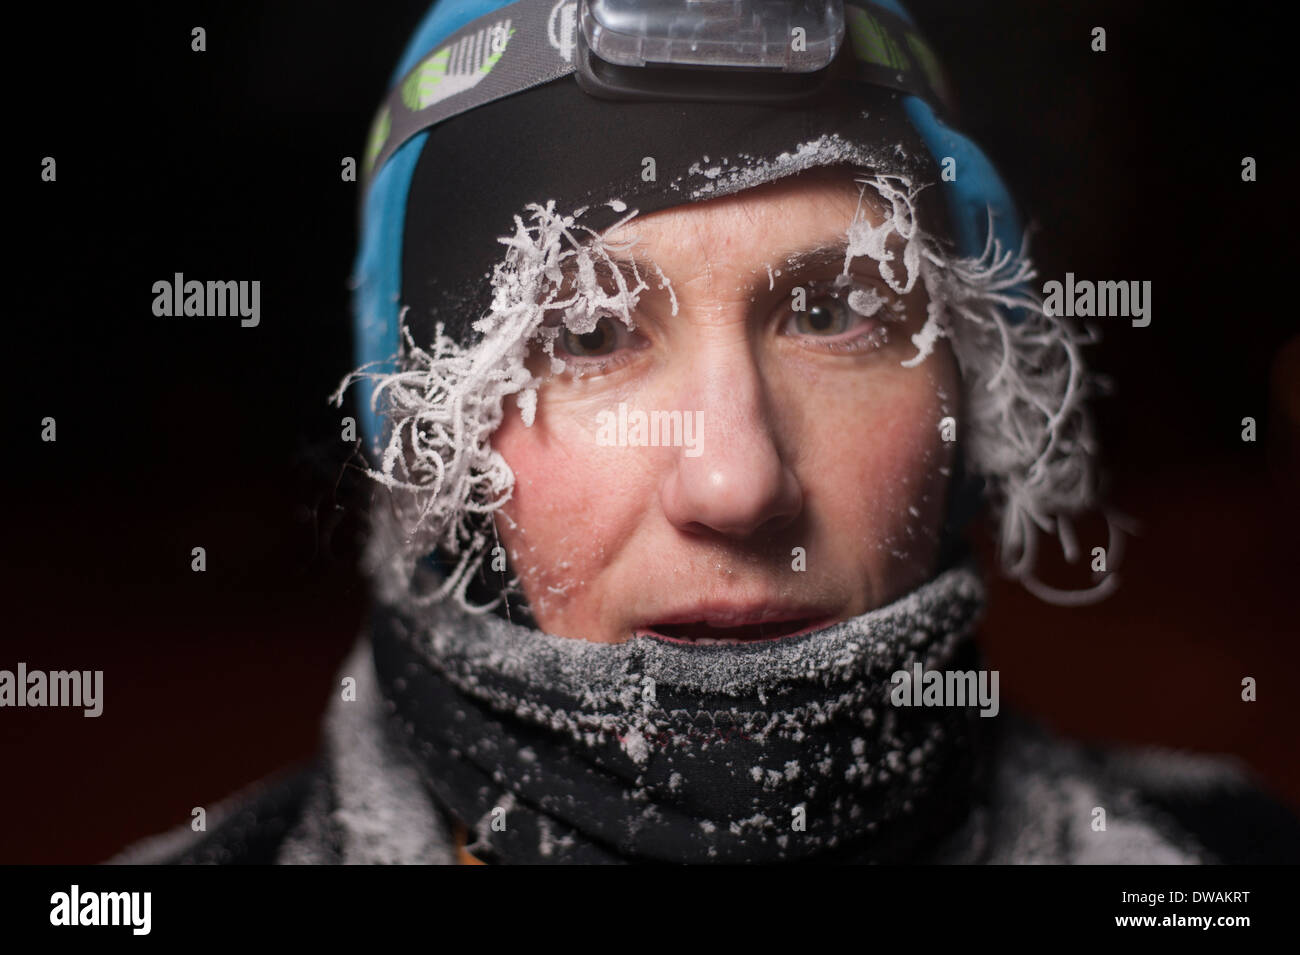 La nuit portrait d'une femme à l'extérieur avec le gel sur son visage, des cheveux et des cils Banque D'Images